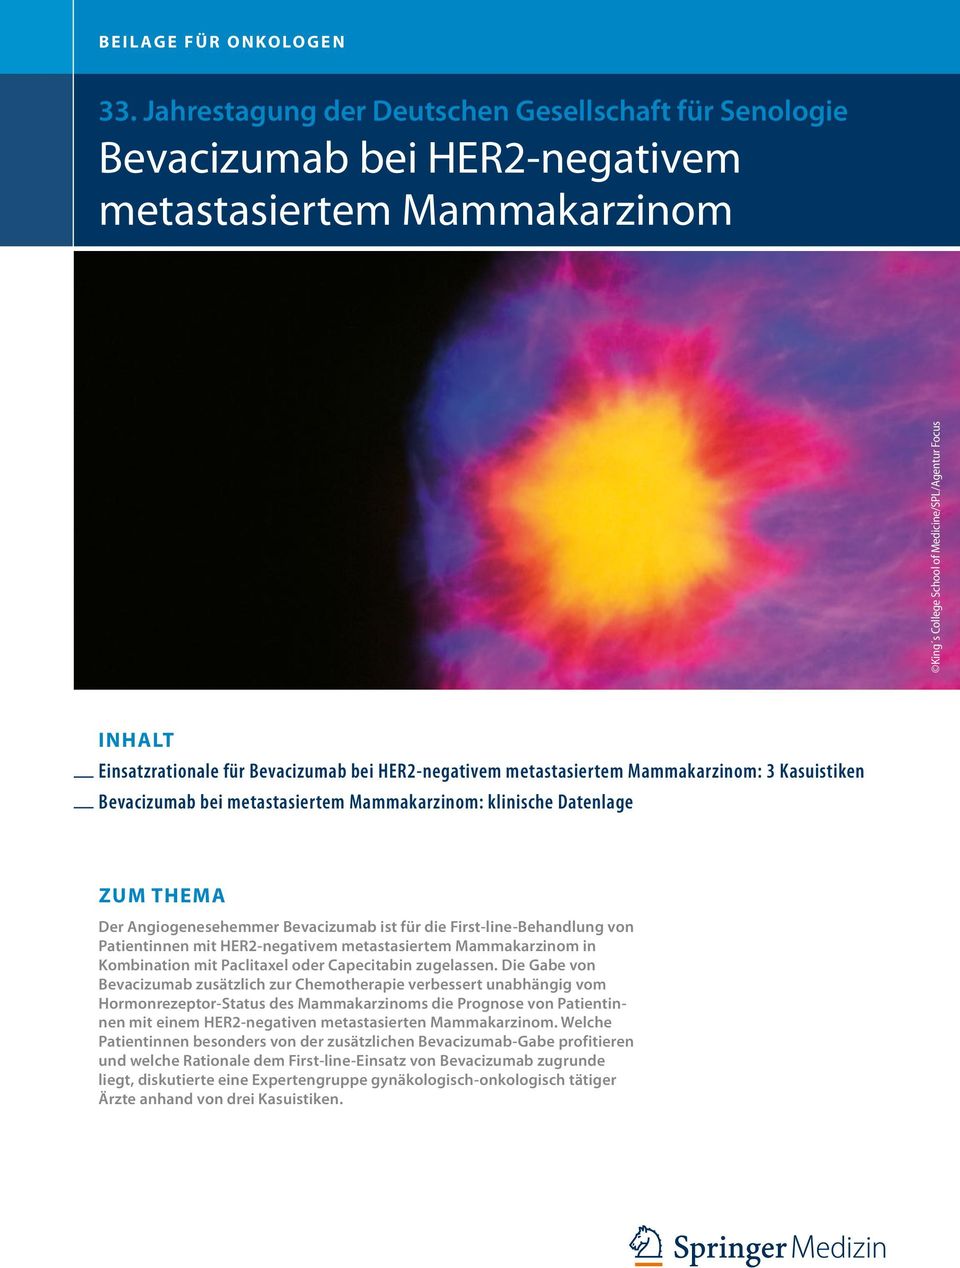 HER2-negativem metastasiertem Mammakarzinom in Kombination mit Paclitaxel oder Capecitabin zugelassen.